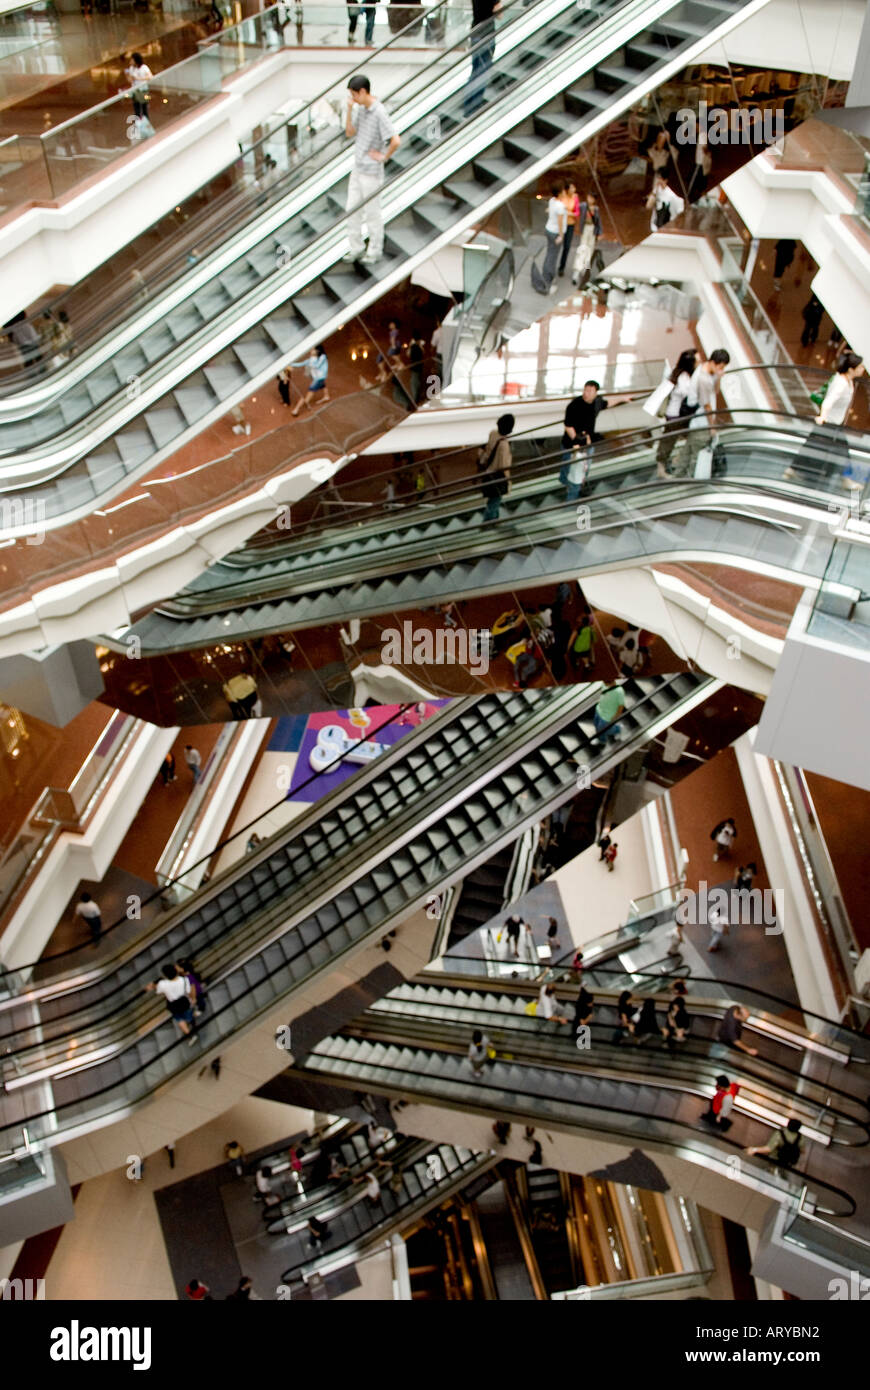 Escalator at a popular shopping mall in Hong Kong SAR China Stock Photo -  Alamy